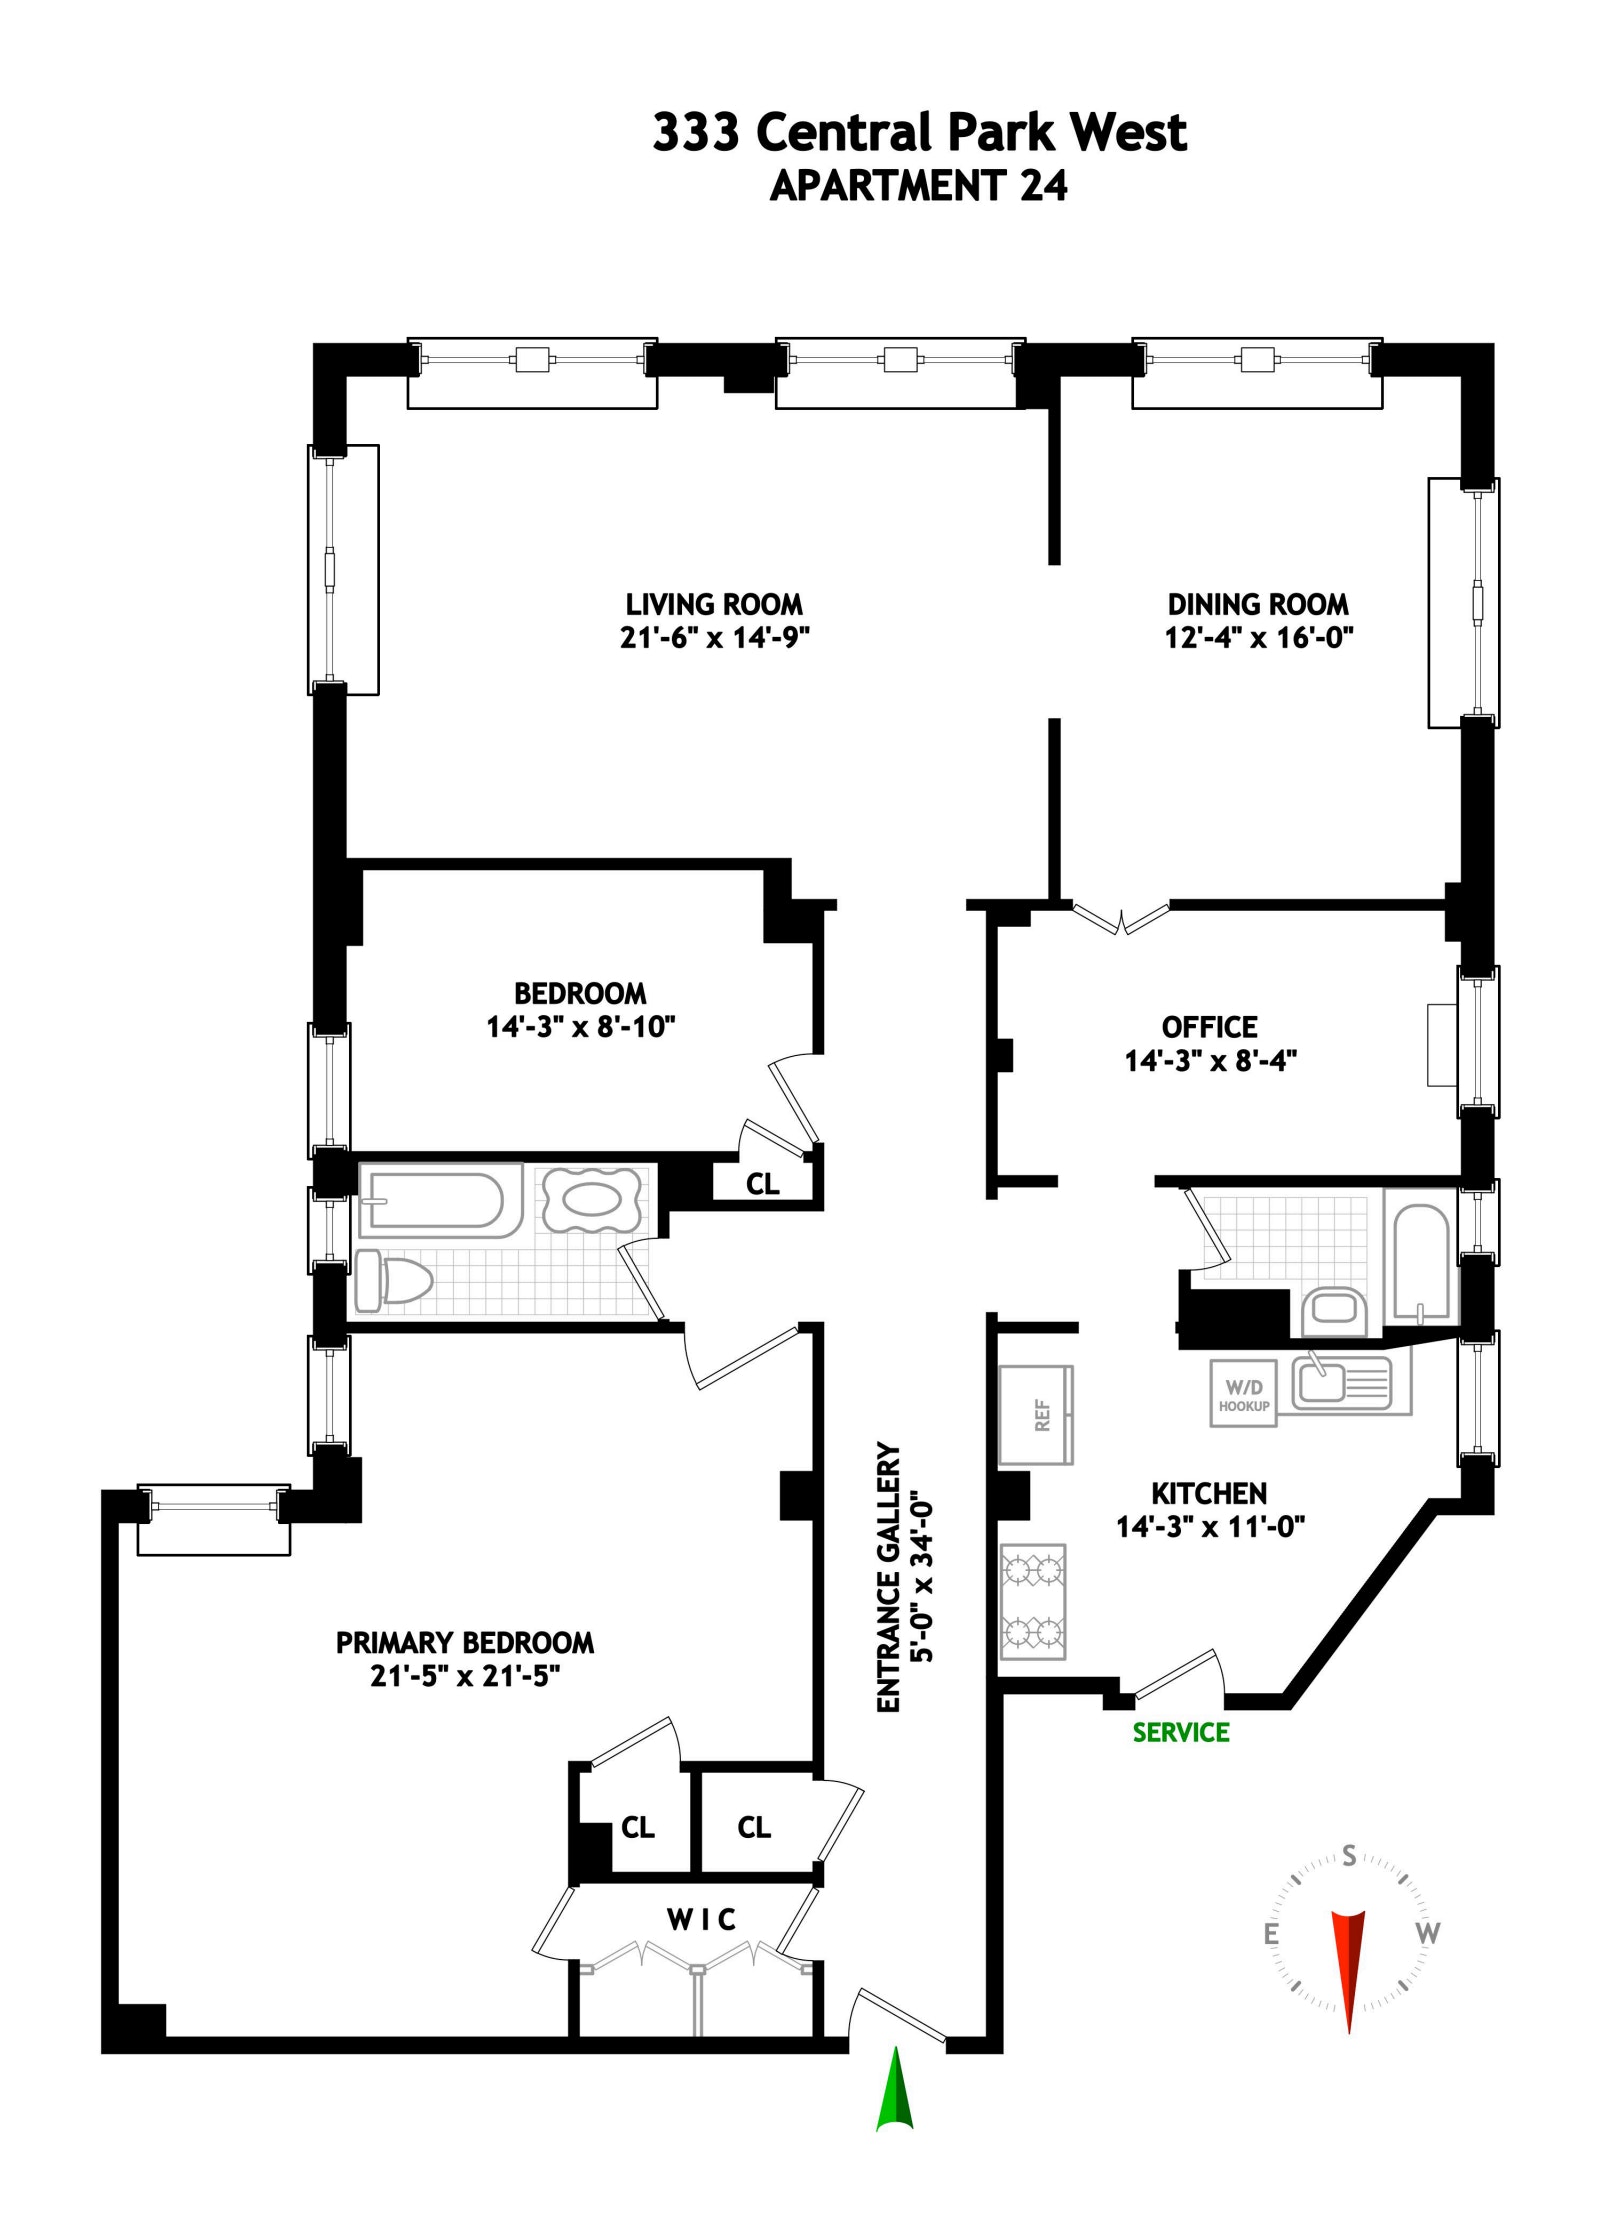 Floorplan for 333 Central Park West, 24